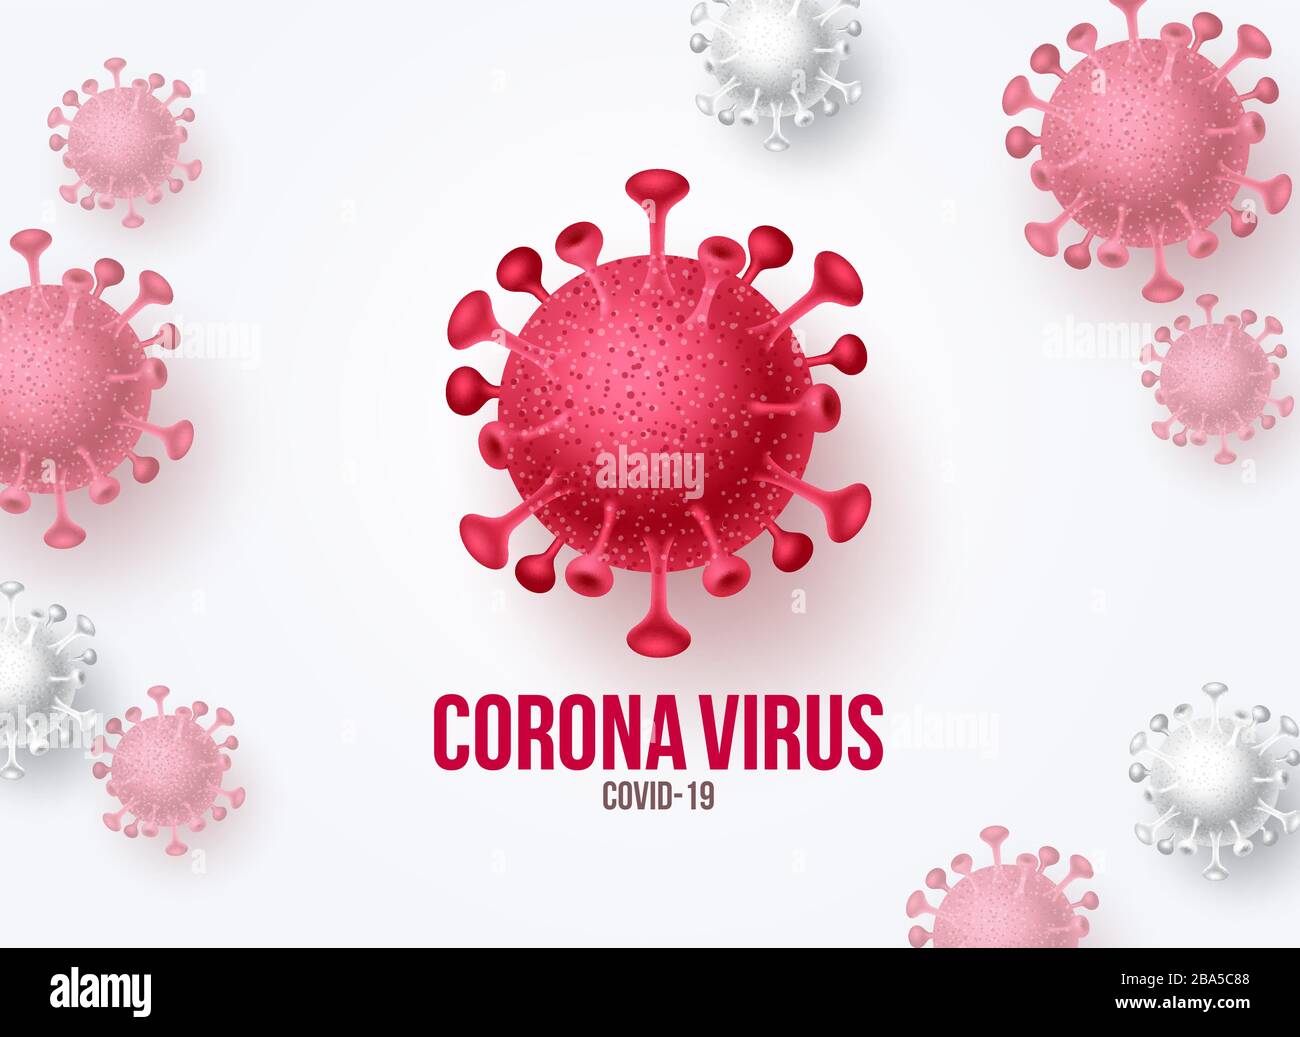 Corona Virus Kovid-19 Vektor Banner Hintergrund. Covid-19 Virusausbruch Pandemie Krankheit und Welten tödliches Romanvirus in weißem Hintergrund. Vektor Stock Vektor